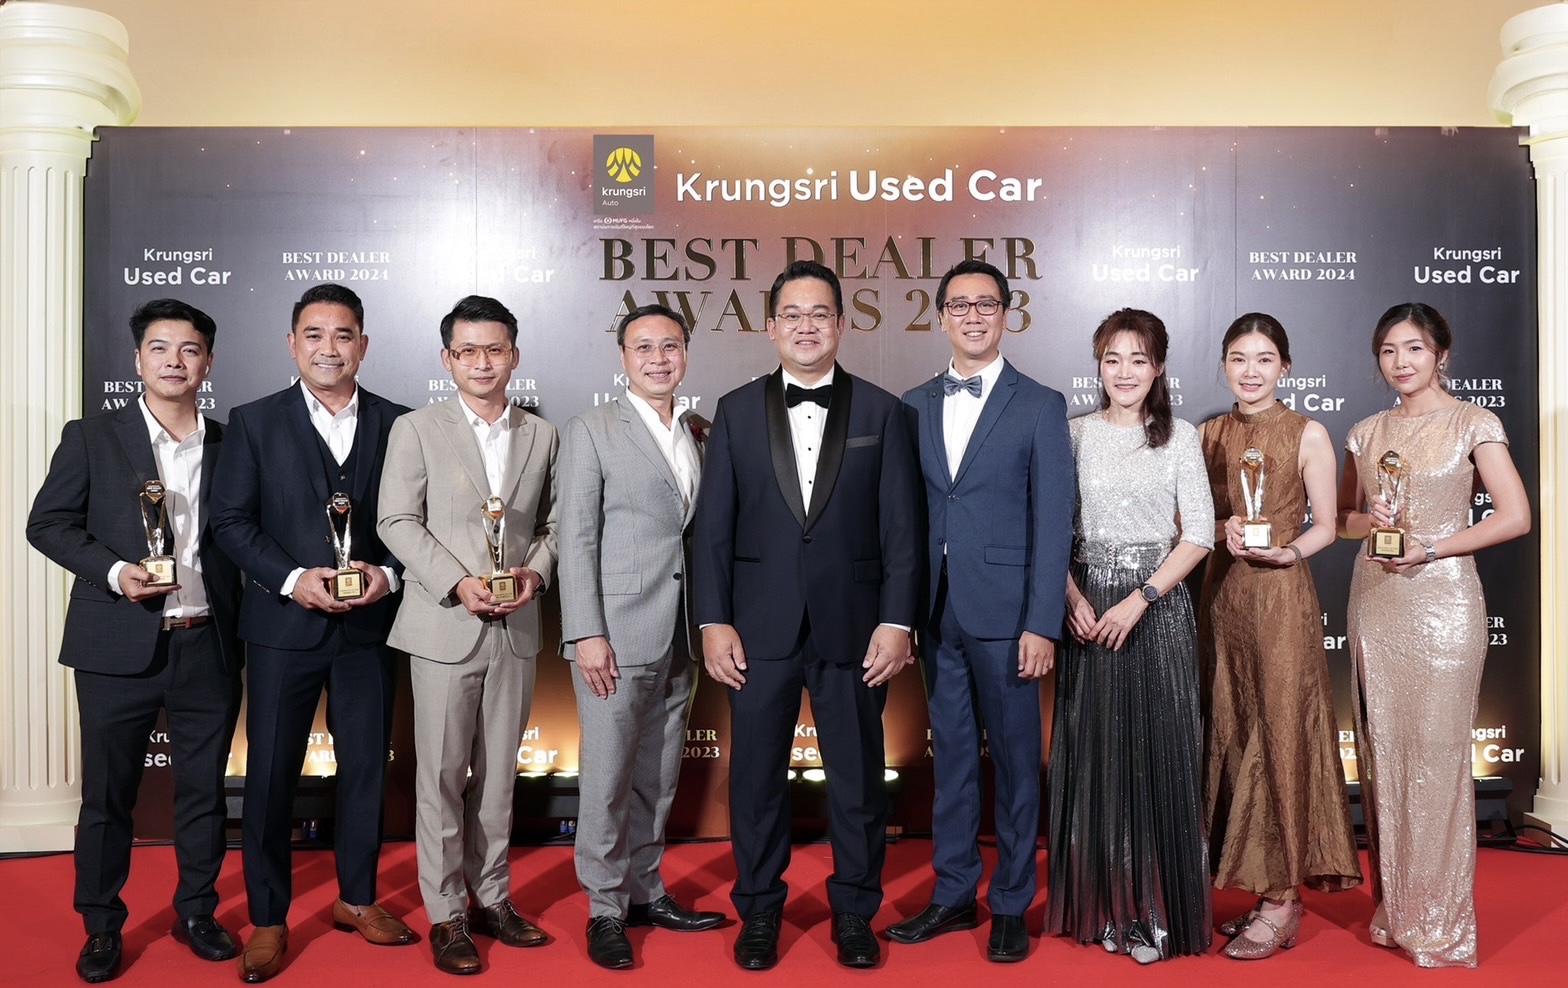 กรุงศรี ออโต้” ประกาศรางวัล Krungsri Used Car Best Dealer Awards 2023ฉลองความสำเร็จพันธมิตรรถยนต์ใช้แล้ว